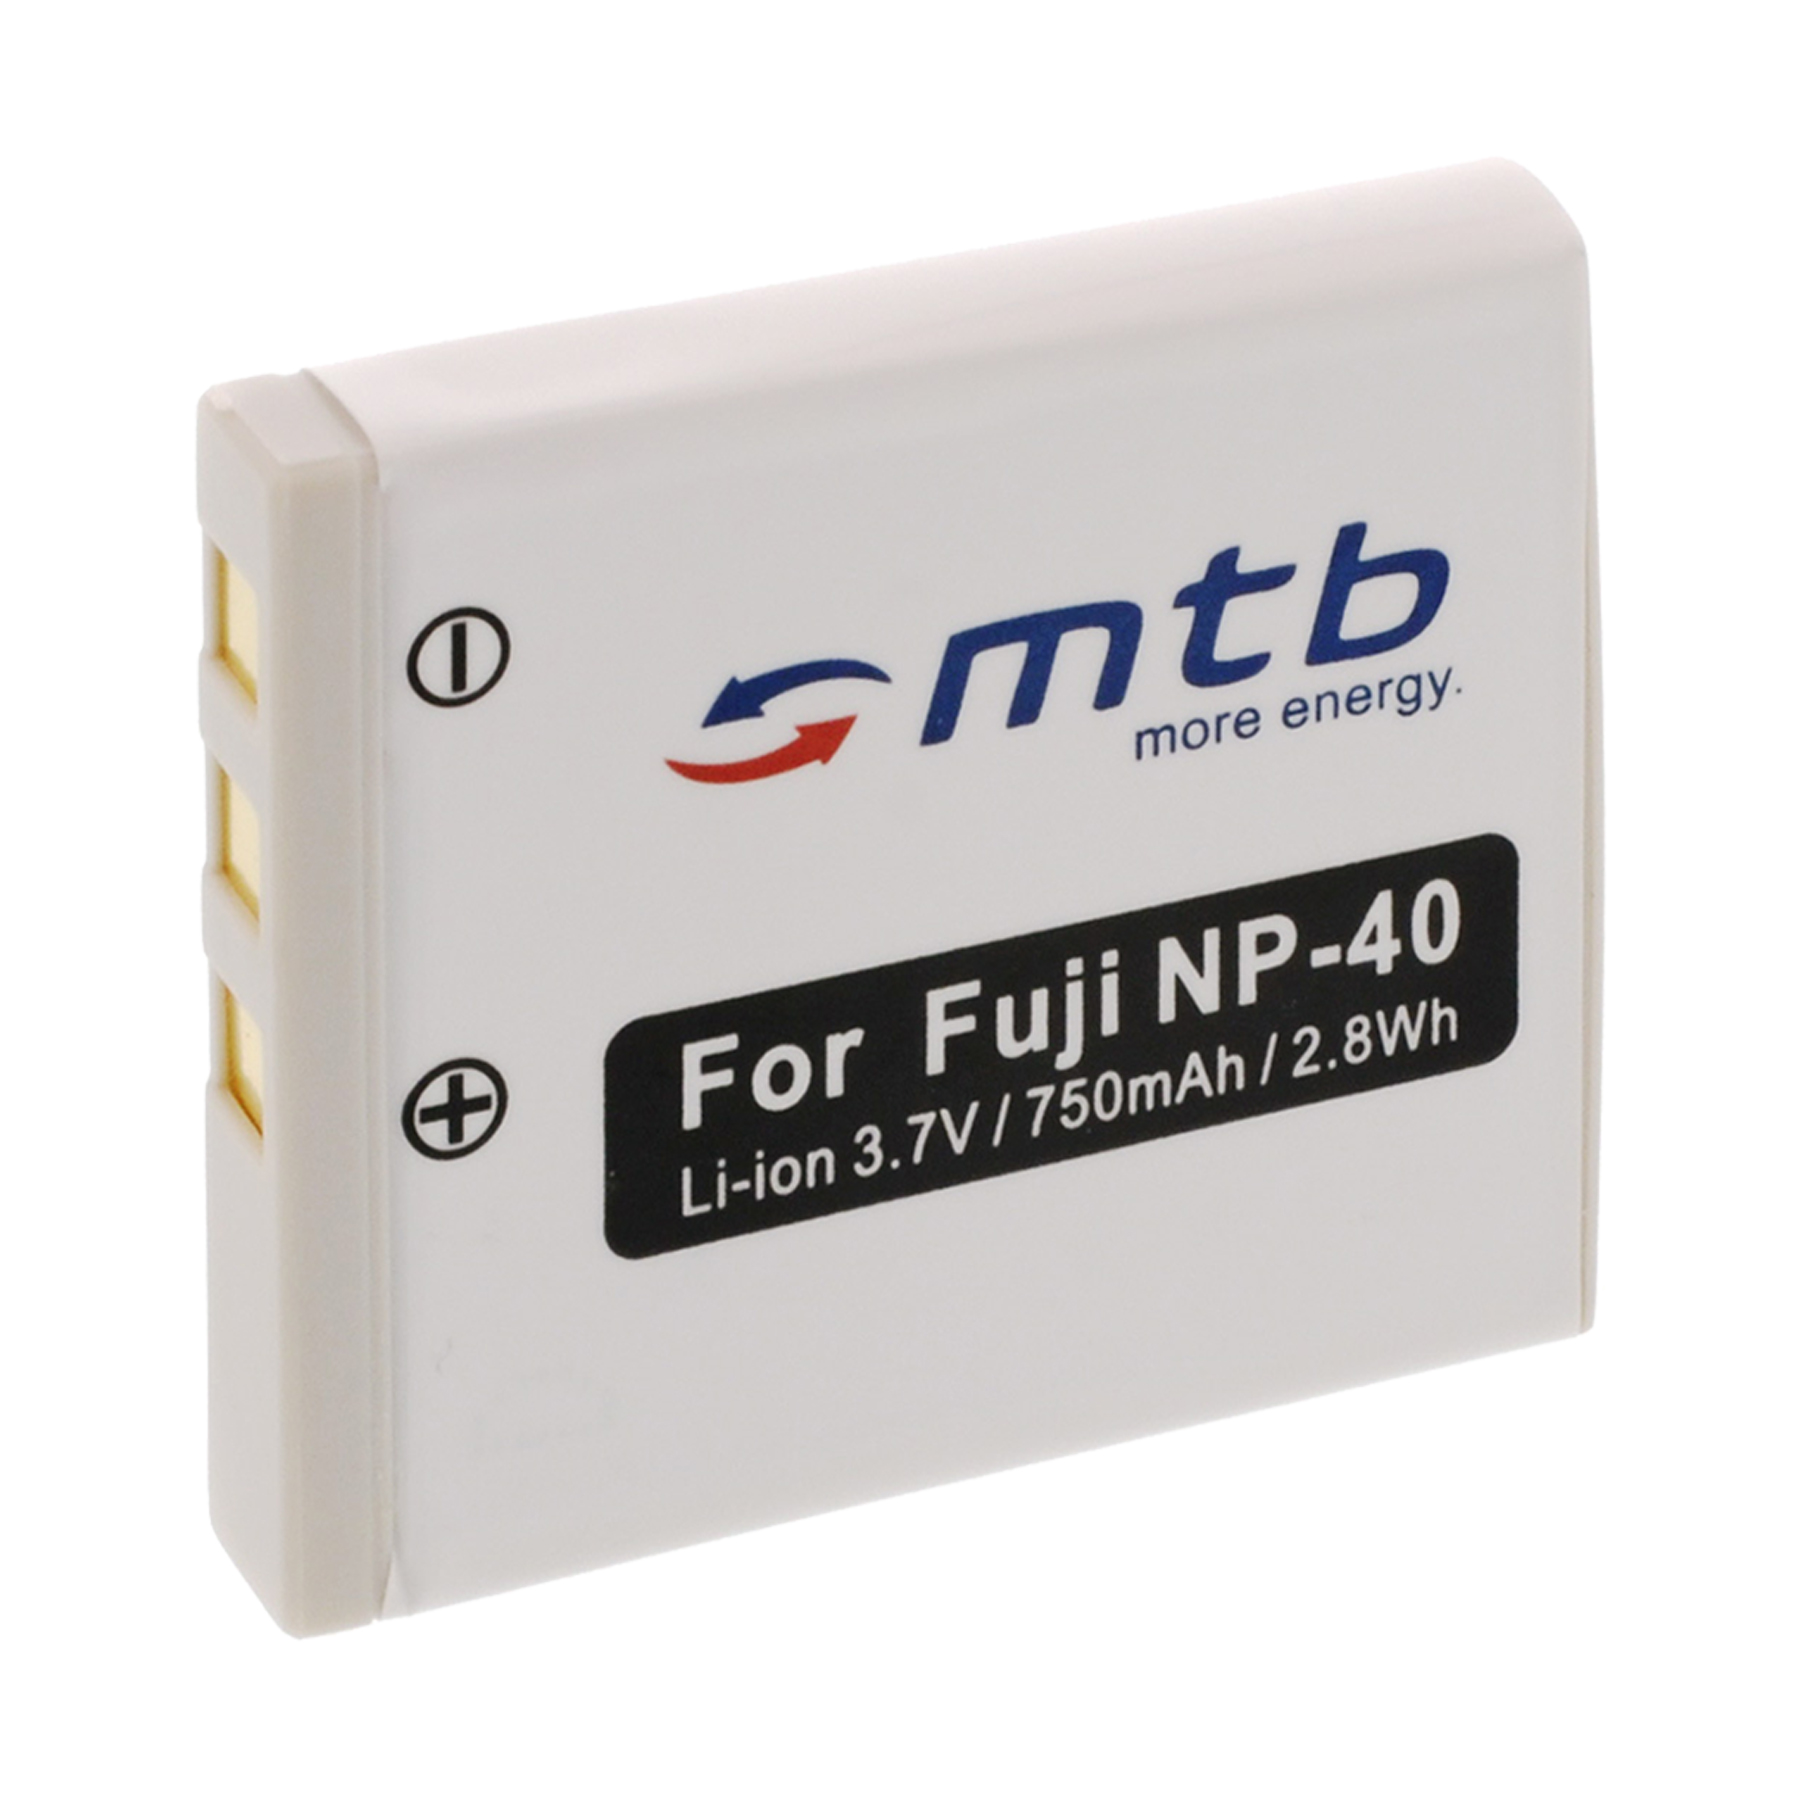 MTB MORE ENERGY BAT-021 FNP-40 750 mAh Li-Ion, Akku